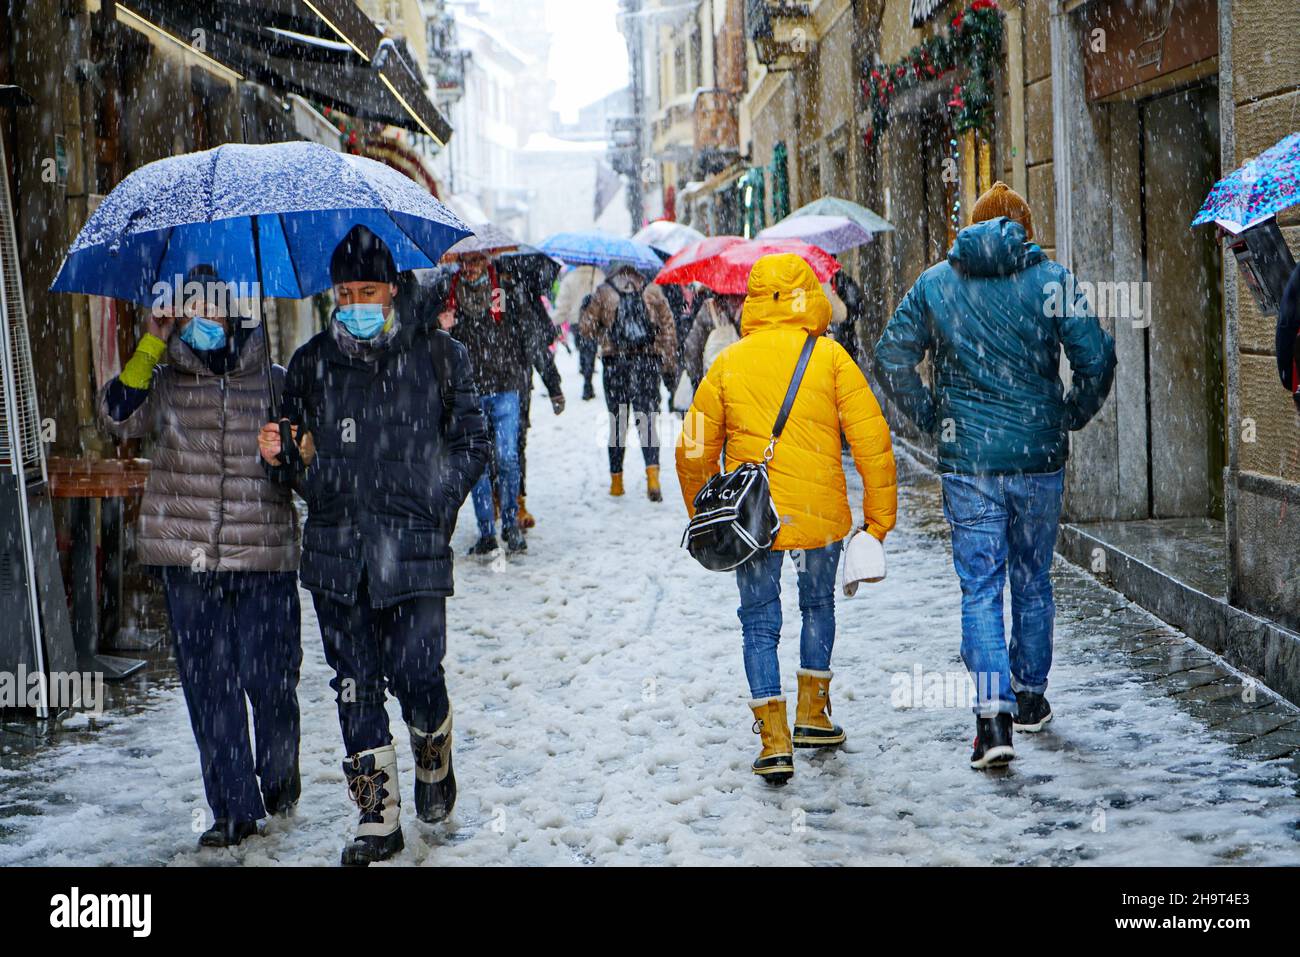 Die Stadt wurde von einem Schneesturm, Kälte, Klimawandel bedeckt, Menschen gehen unter dem Schneesturm. Aosta, Italien – Dezember 2021 Stockfoto